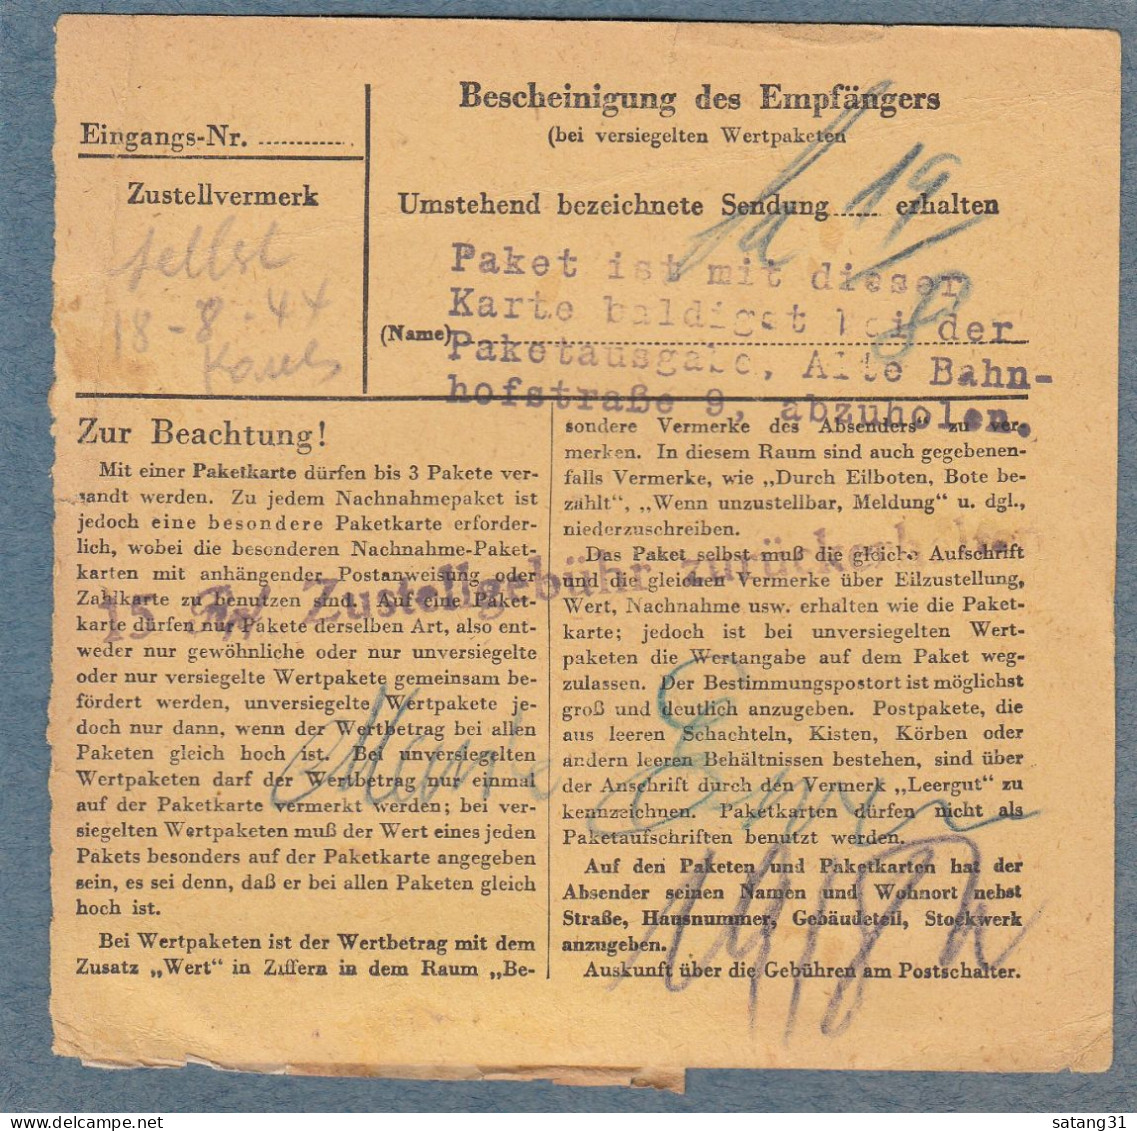 PAKETKARTE AUS MERSCH,VERSCHIEDENE STPLN. AUF DER RÜCKSEITE,SPÄTVERWENDUNG 17-8-44. - 1940-1944 Deutsche Besatzung